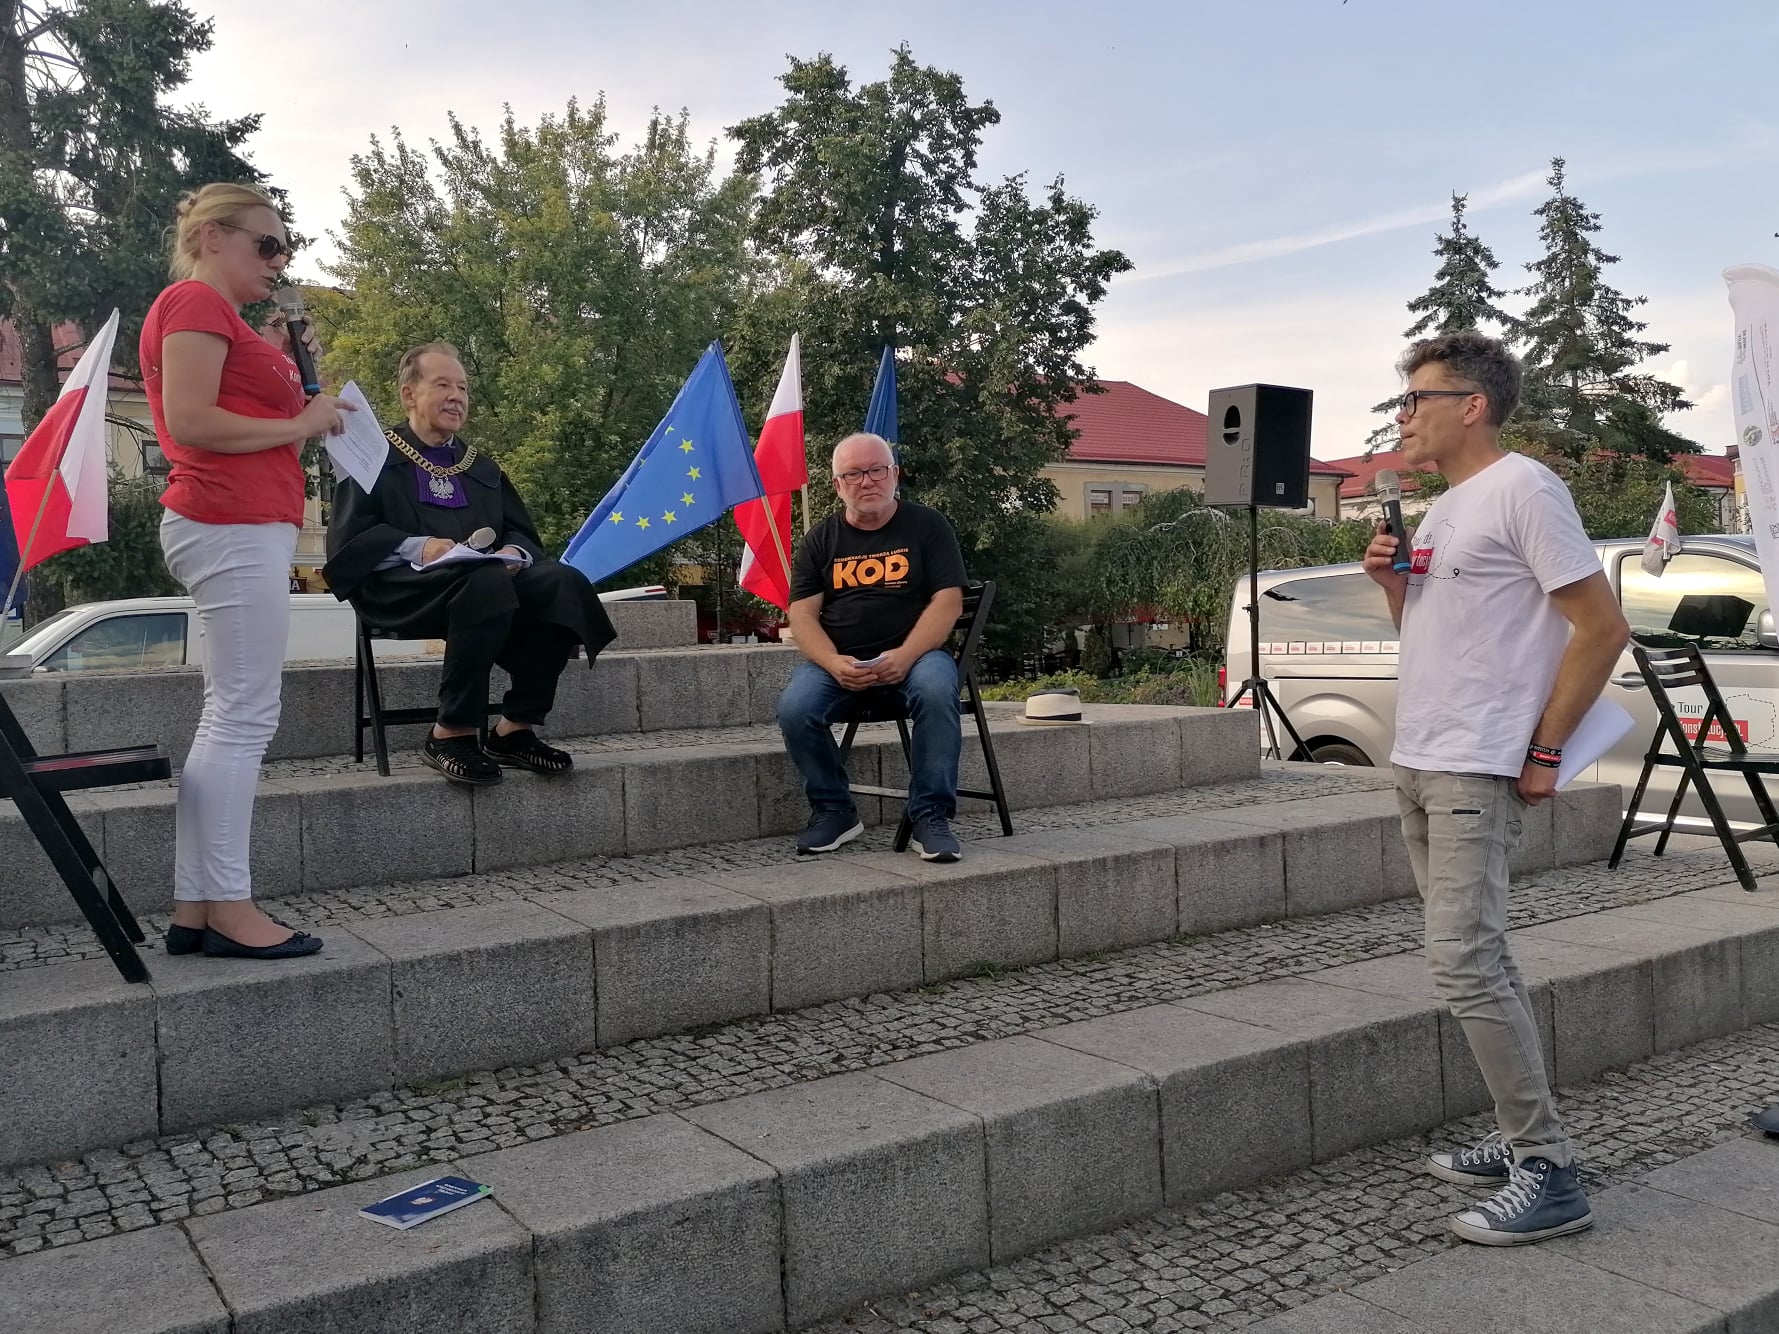 Chełm, Puławy, Lublin i Zamość: Tour de Konstytucja na Lubelszczyźnie